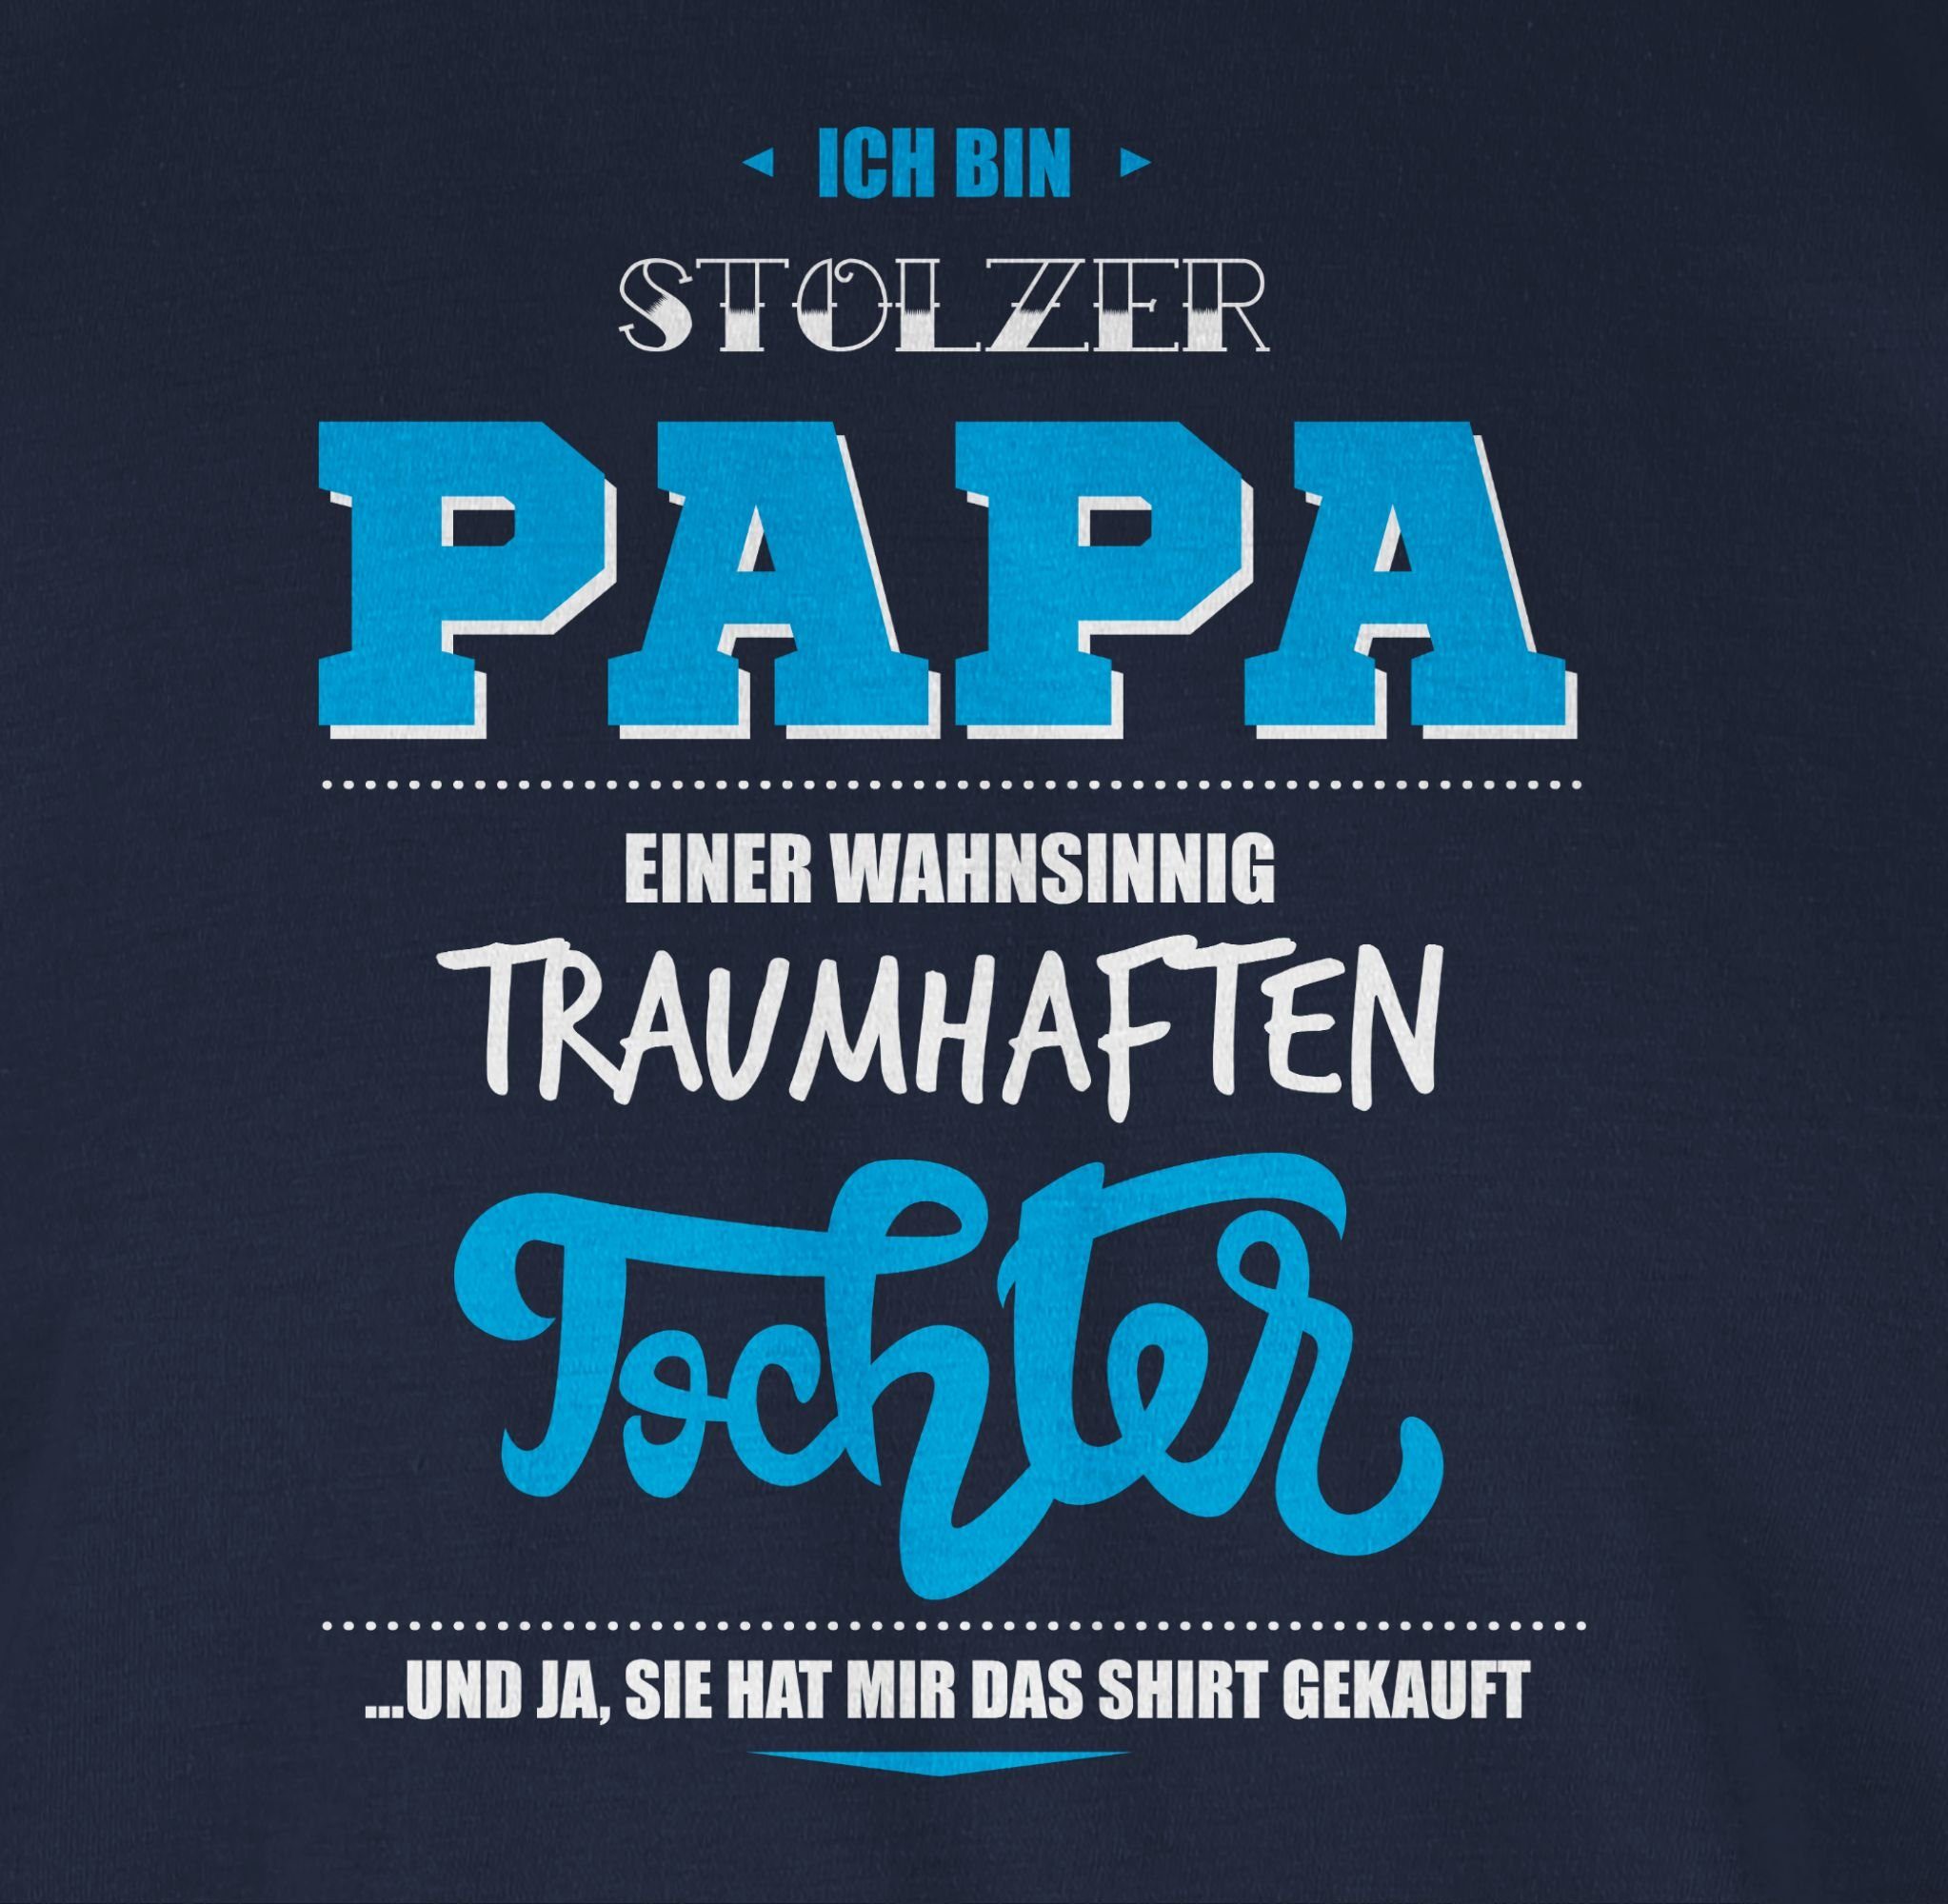 Papa traumhaften Papa Shirtracer für wahnsinnig T-Shirt Vatertag stolzer Ich einer 2 bin Geschenk Blau Navy Tochter